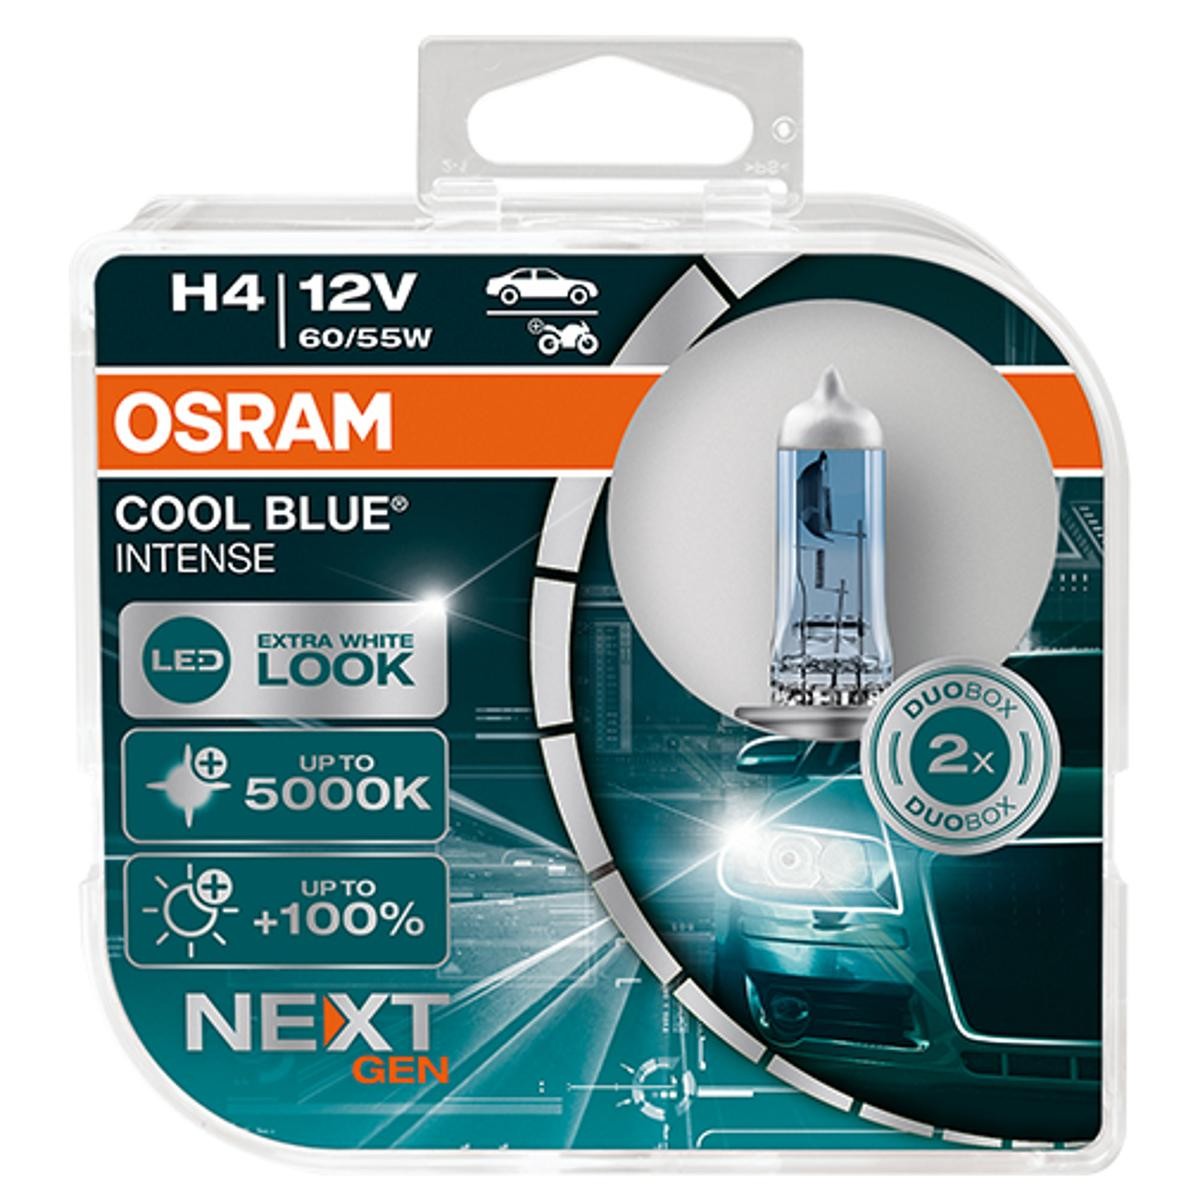 64193CBN-HCB OSRAM COOL BLUE INTENSE next Generation H4 12V 60/55W 5000K  Halogen Glühlampe, Fernscheinwerfer